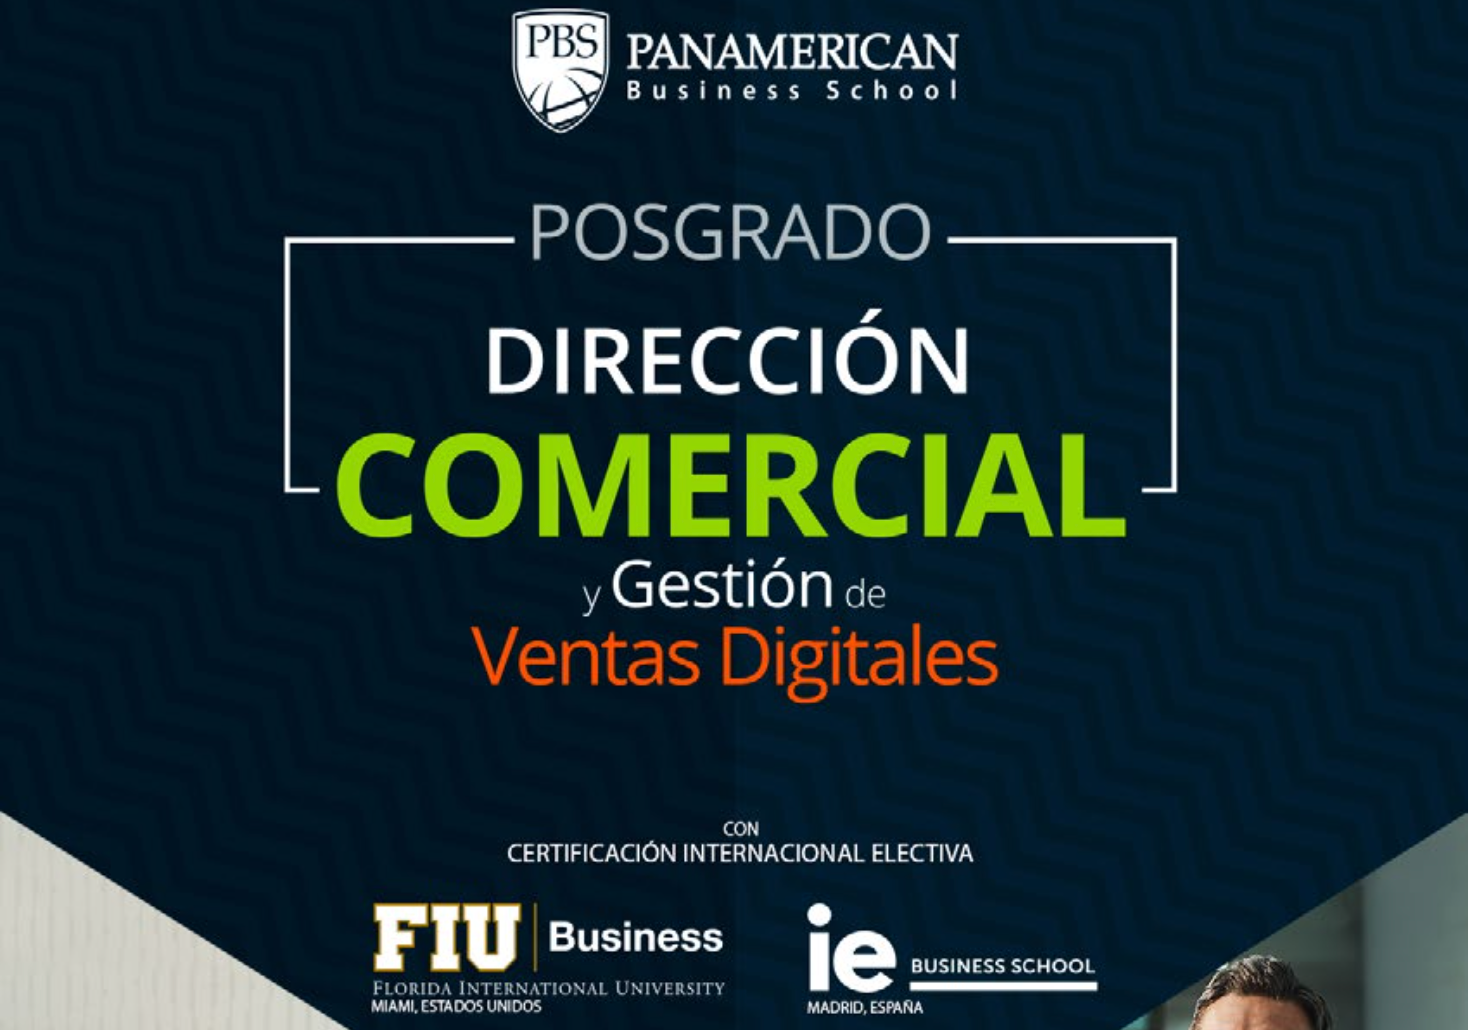 Posgrado Dirección Comercial y Gestión de Ventas Digitales - FIU, IE y PBS